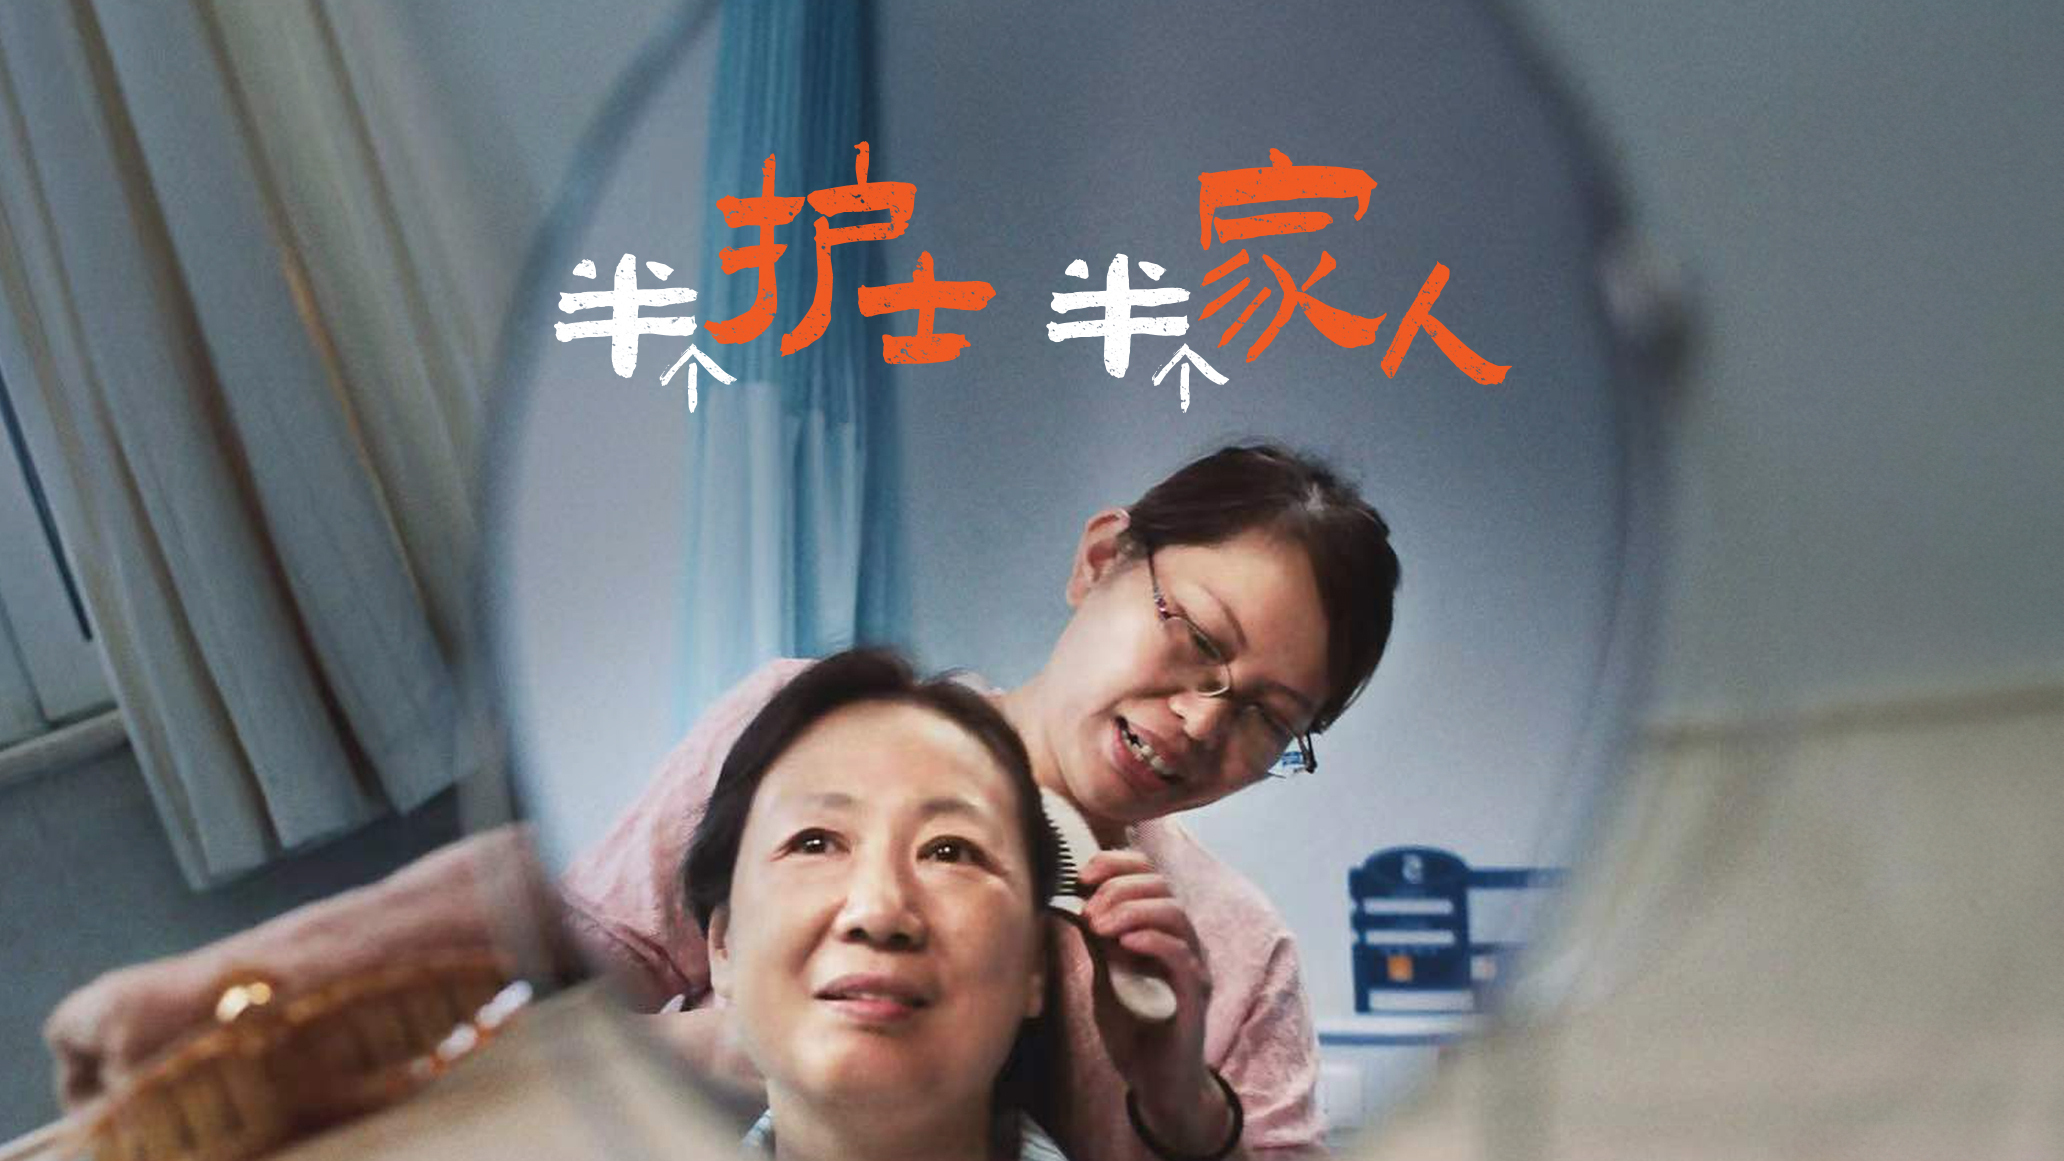 平安乐健康品牌上市系列影片「陪护篇」《半个护士，半个家人》